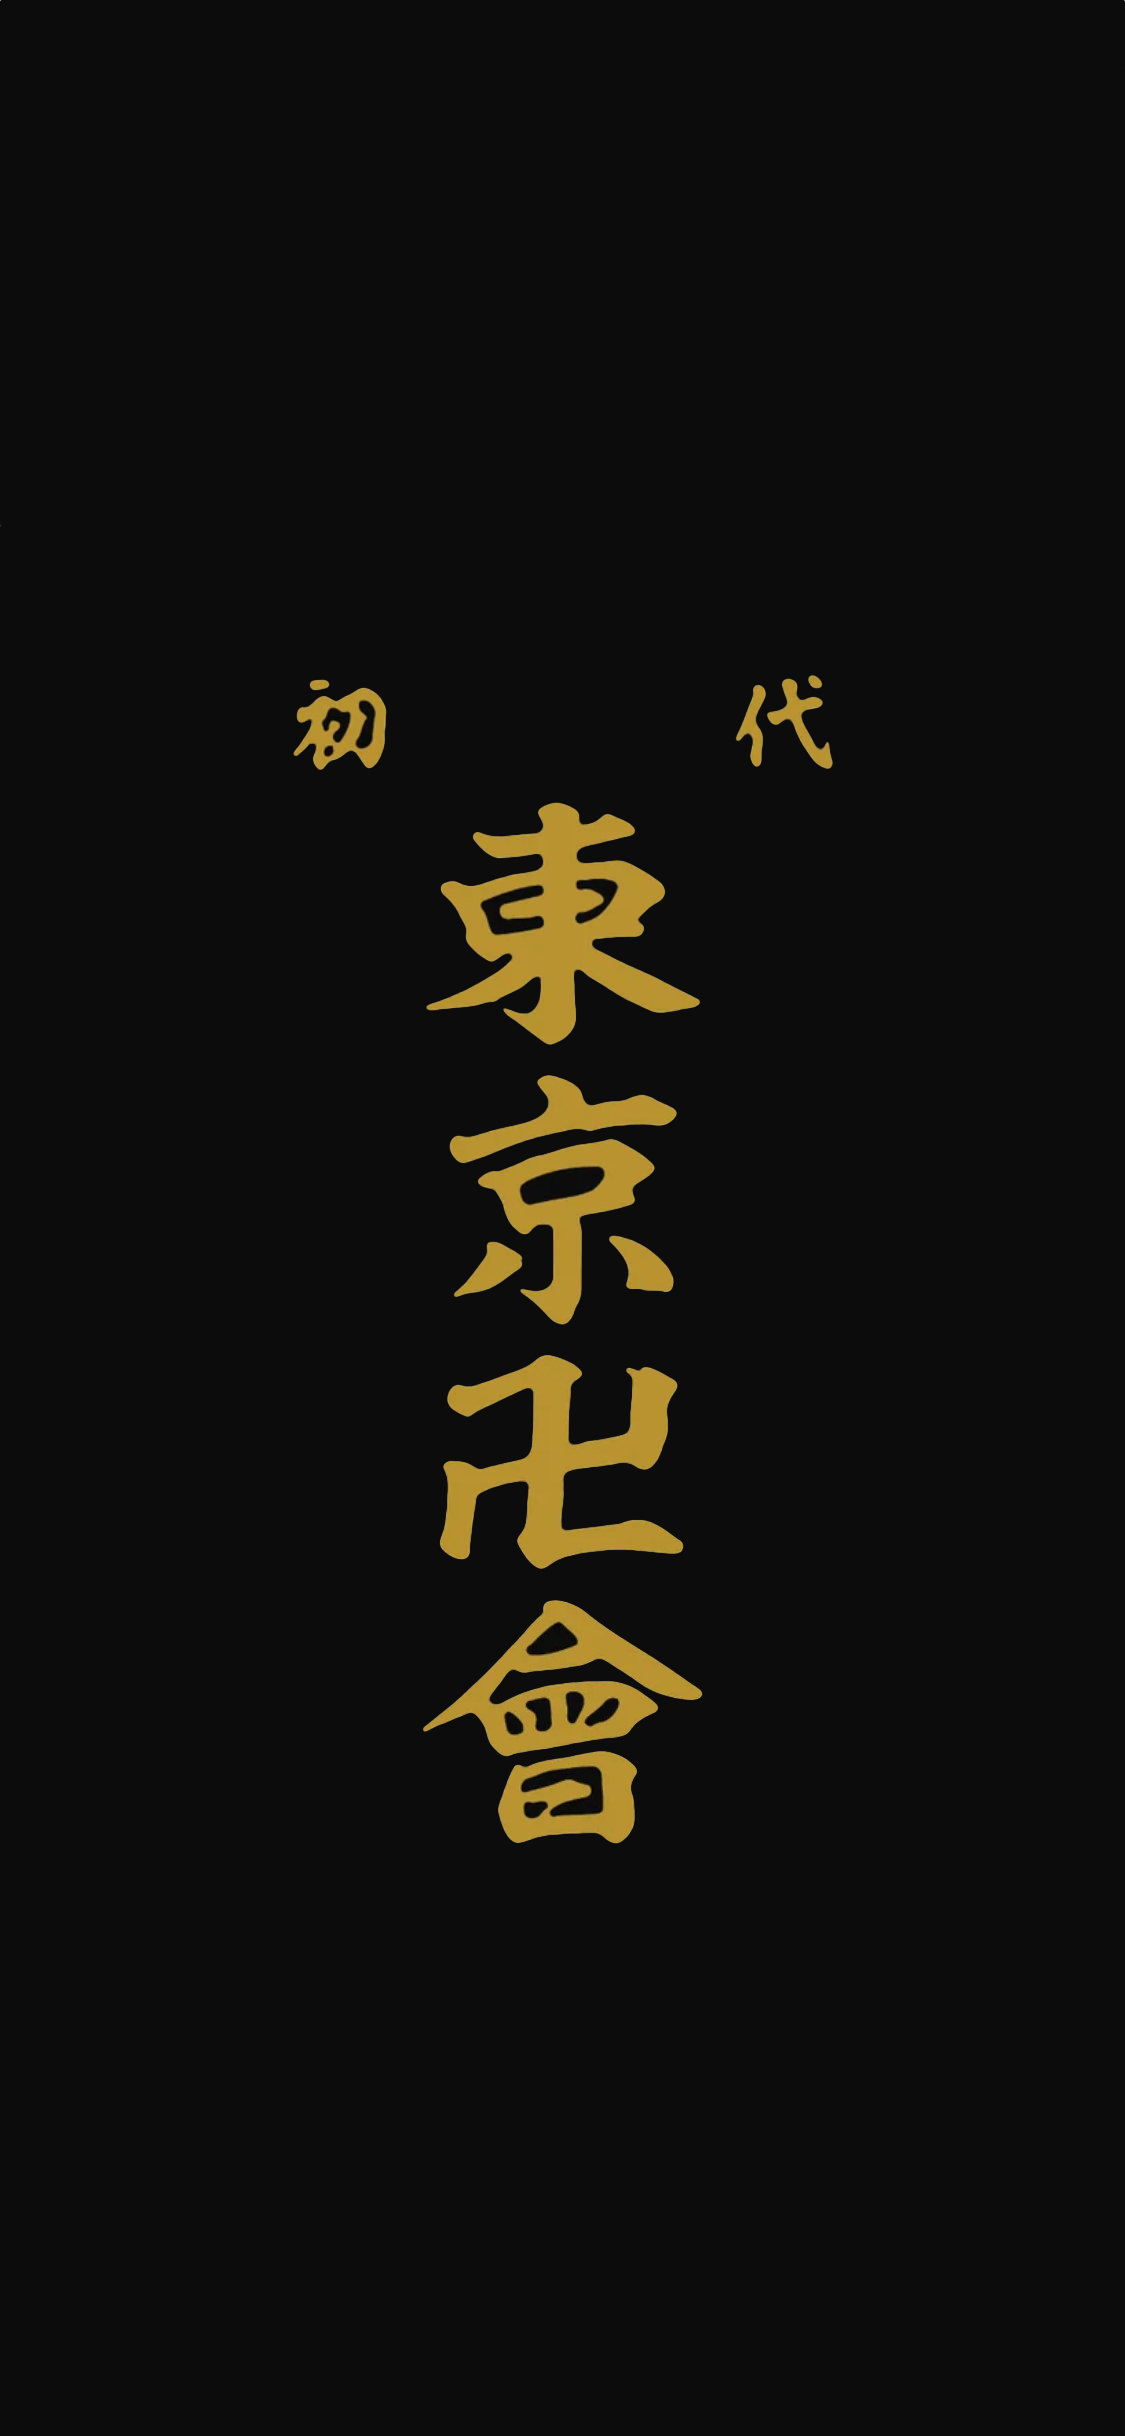 東京卍リベンジャーズの無料高画質スマホ壁紙71枚 エモい スマホ壁紙辞典